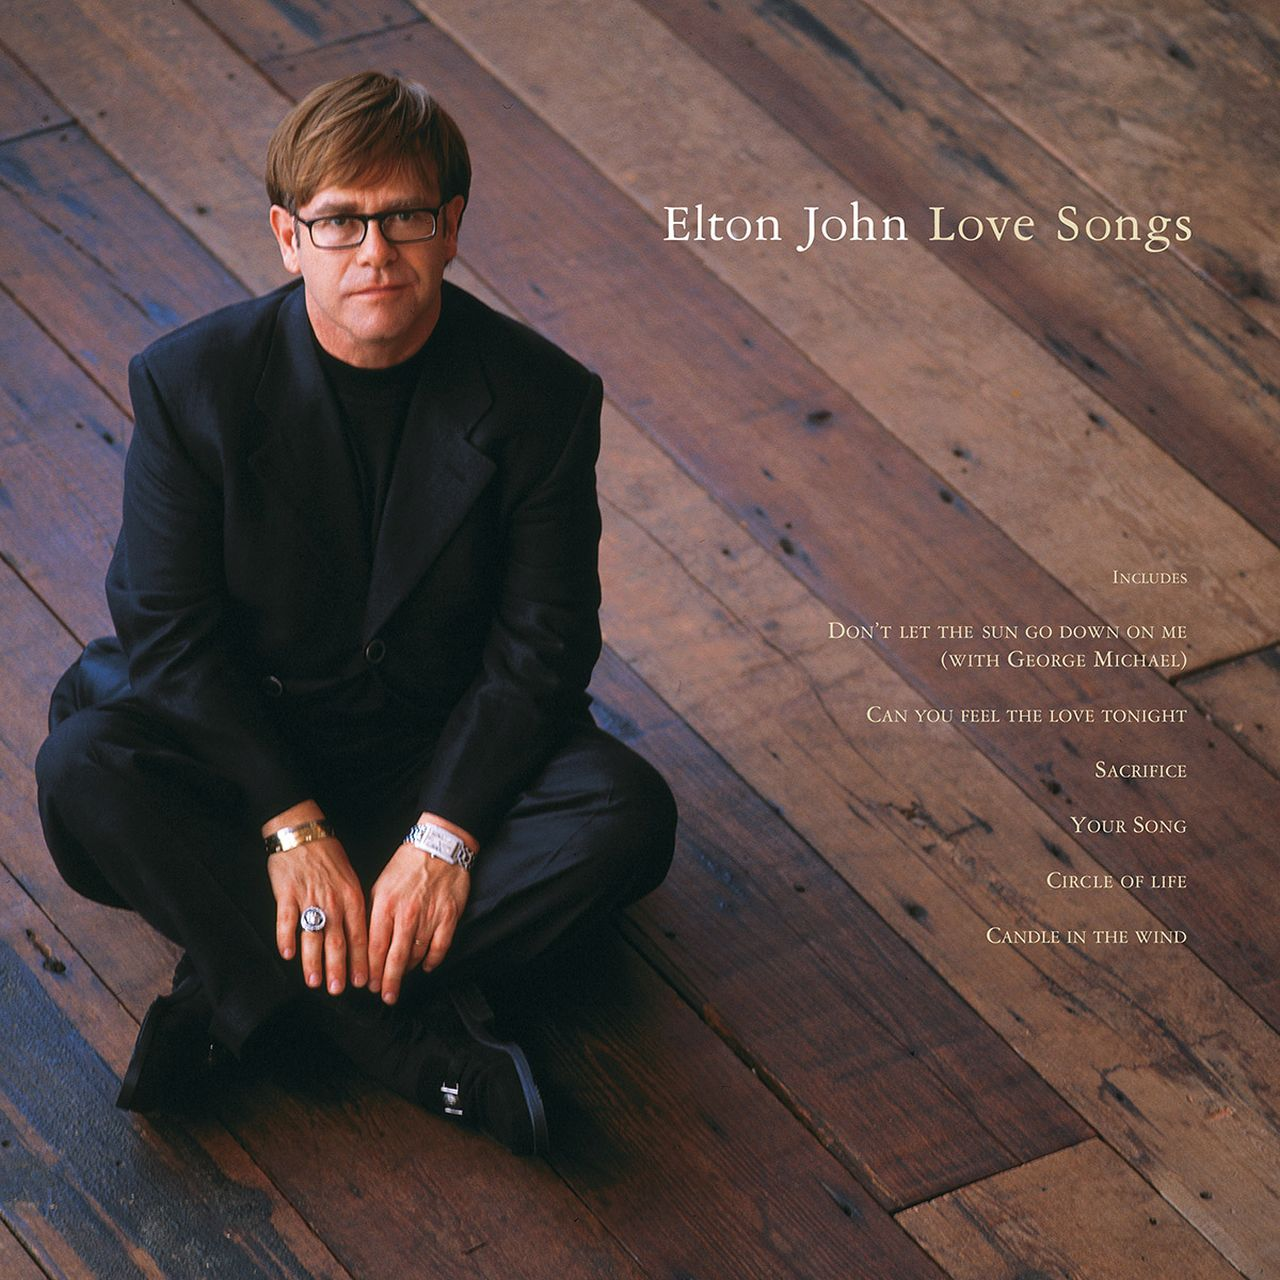 Love 2LP) (Vinyl) (Ltd.Remastered - Elton John - Songs